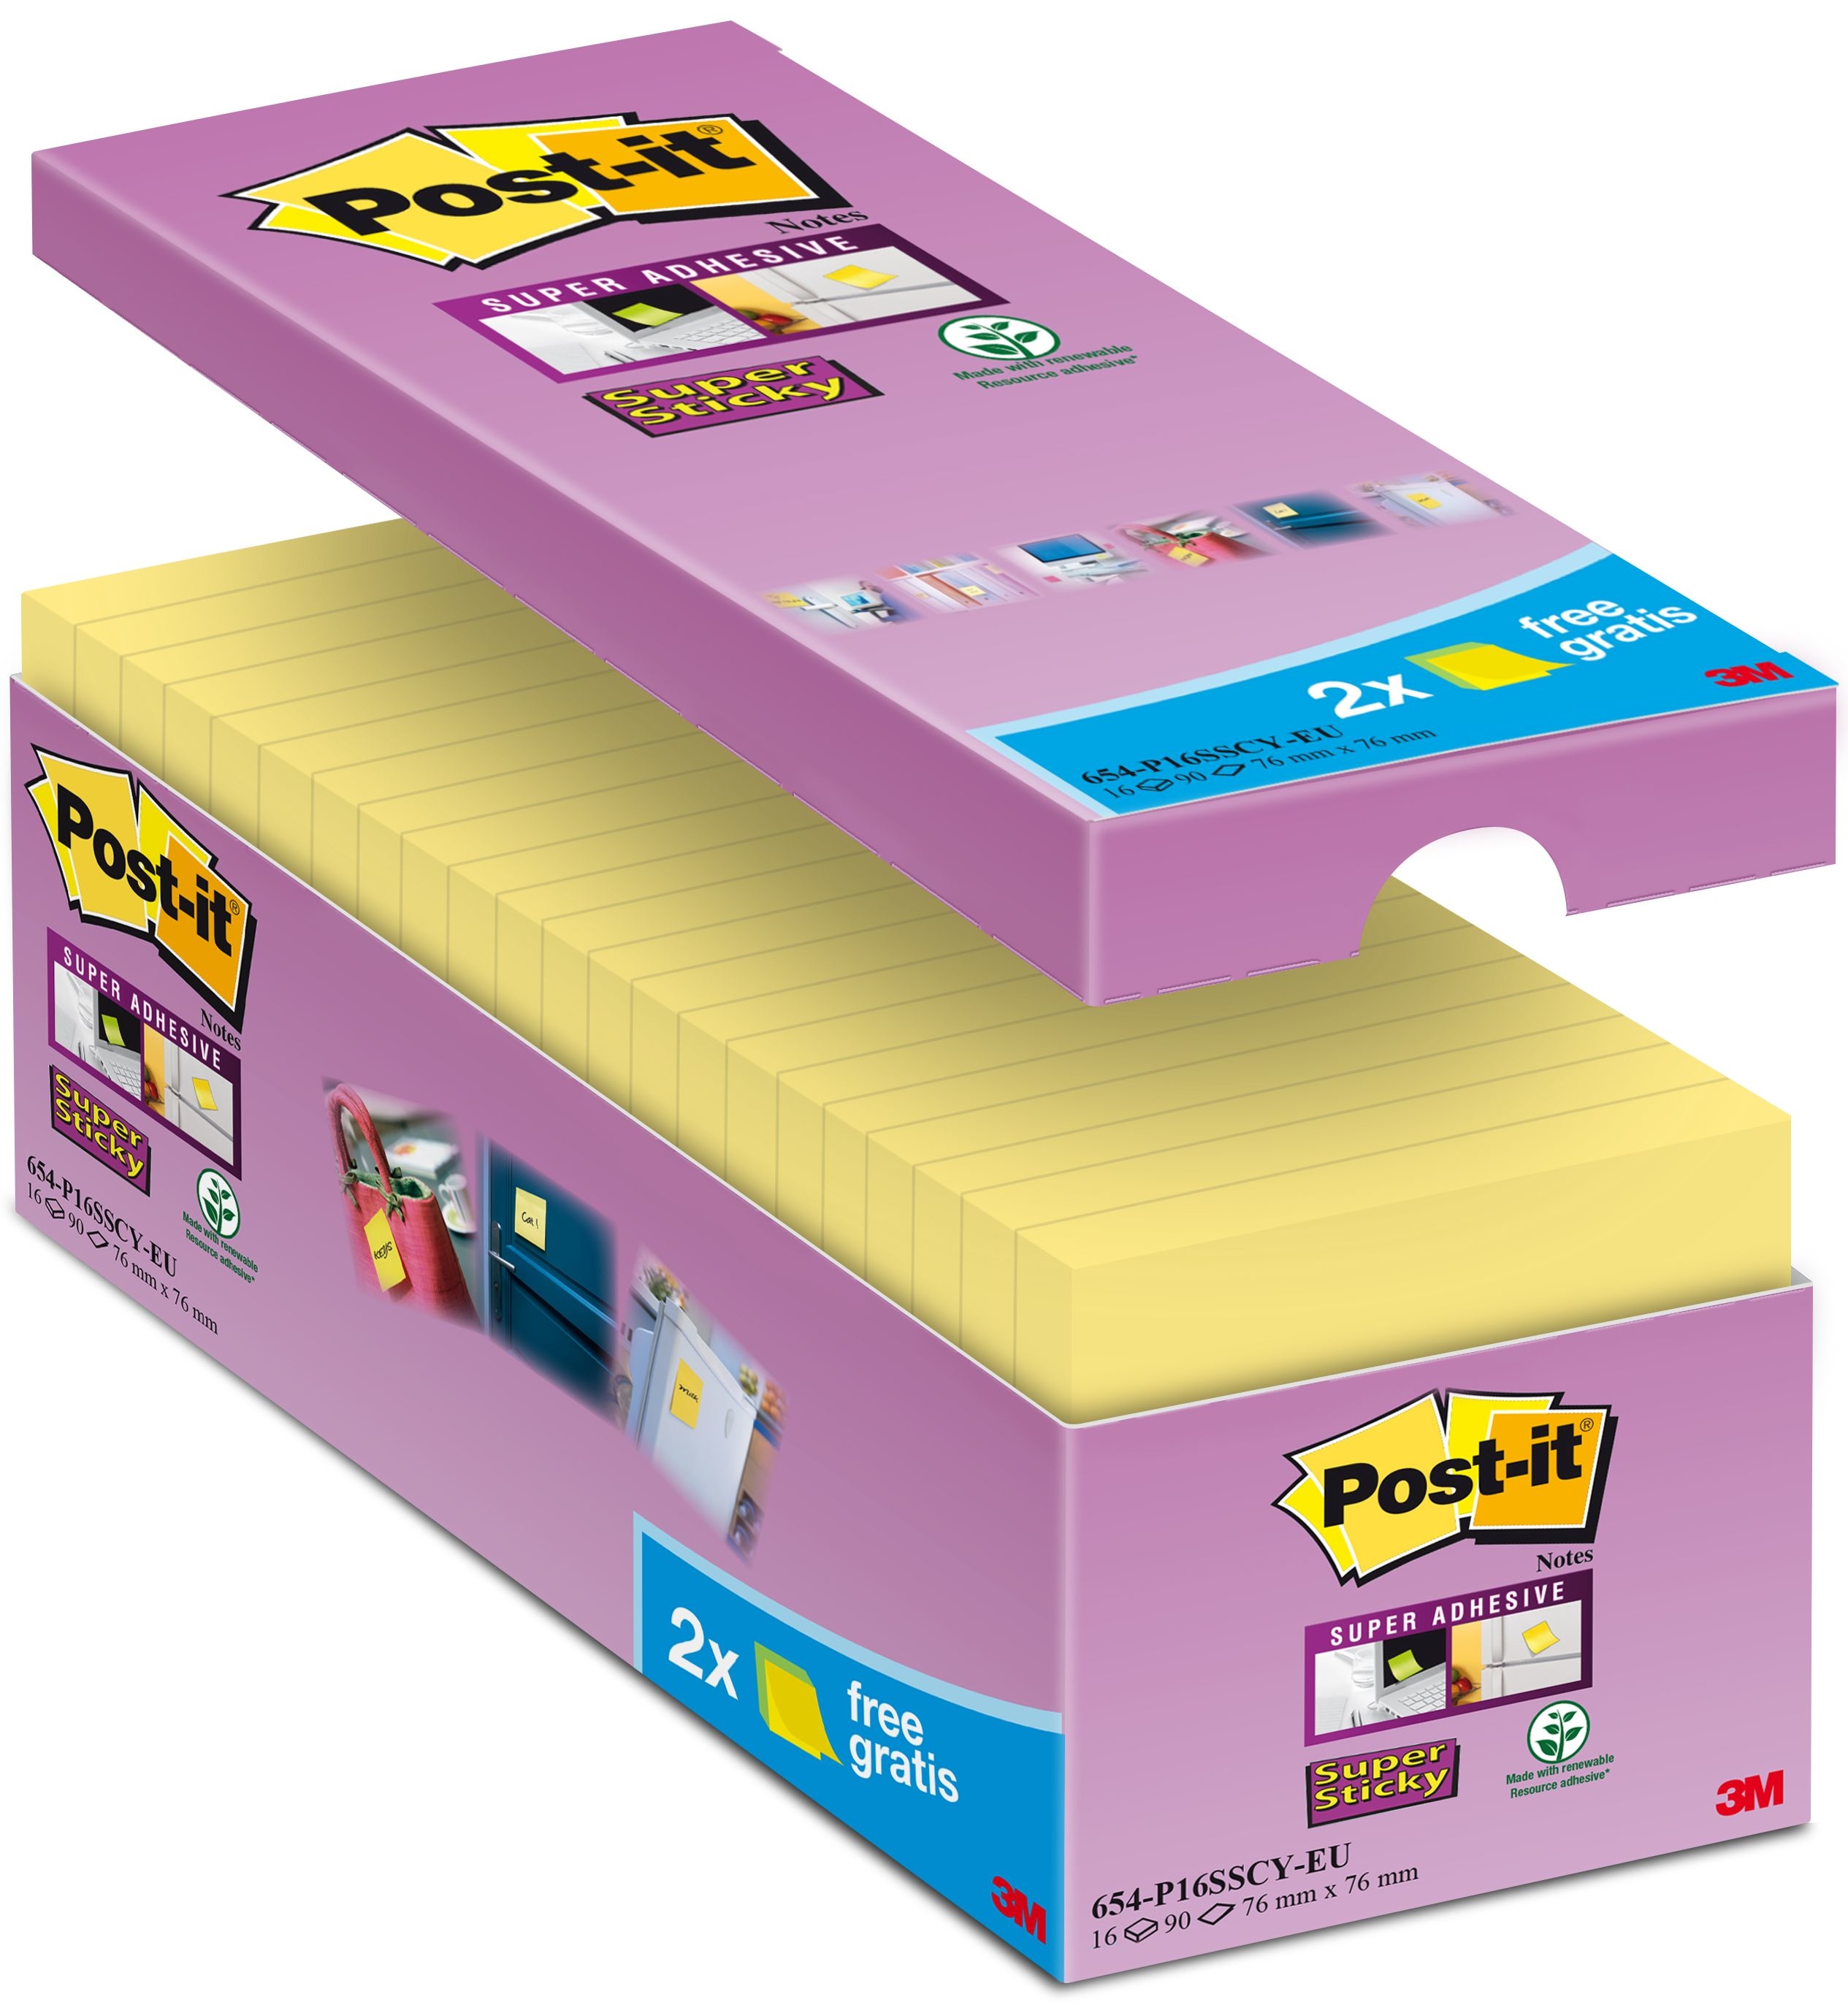 POST-IT Super Sticky Notes 654-P16SSCY-EU 76x76mm jaune 16x90f. 76x76mm jaune 16x90f.